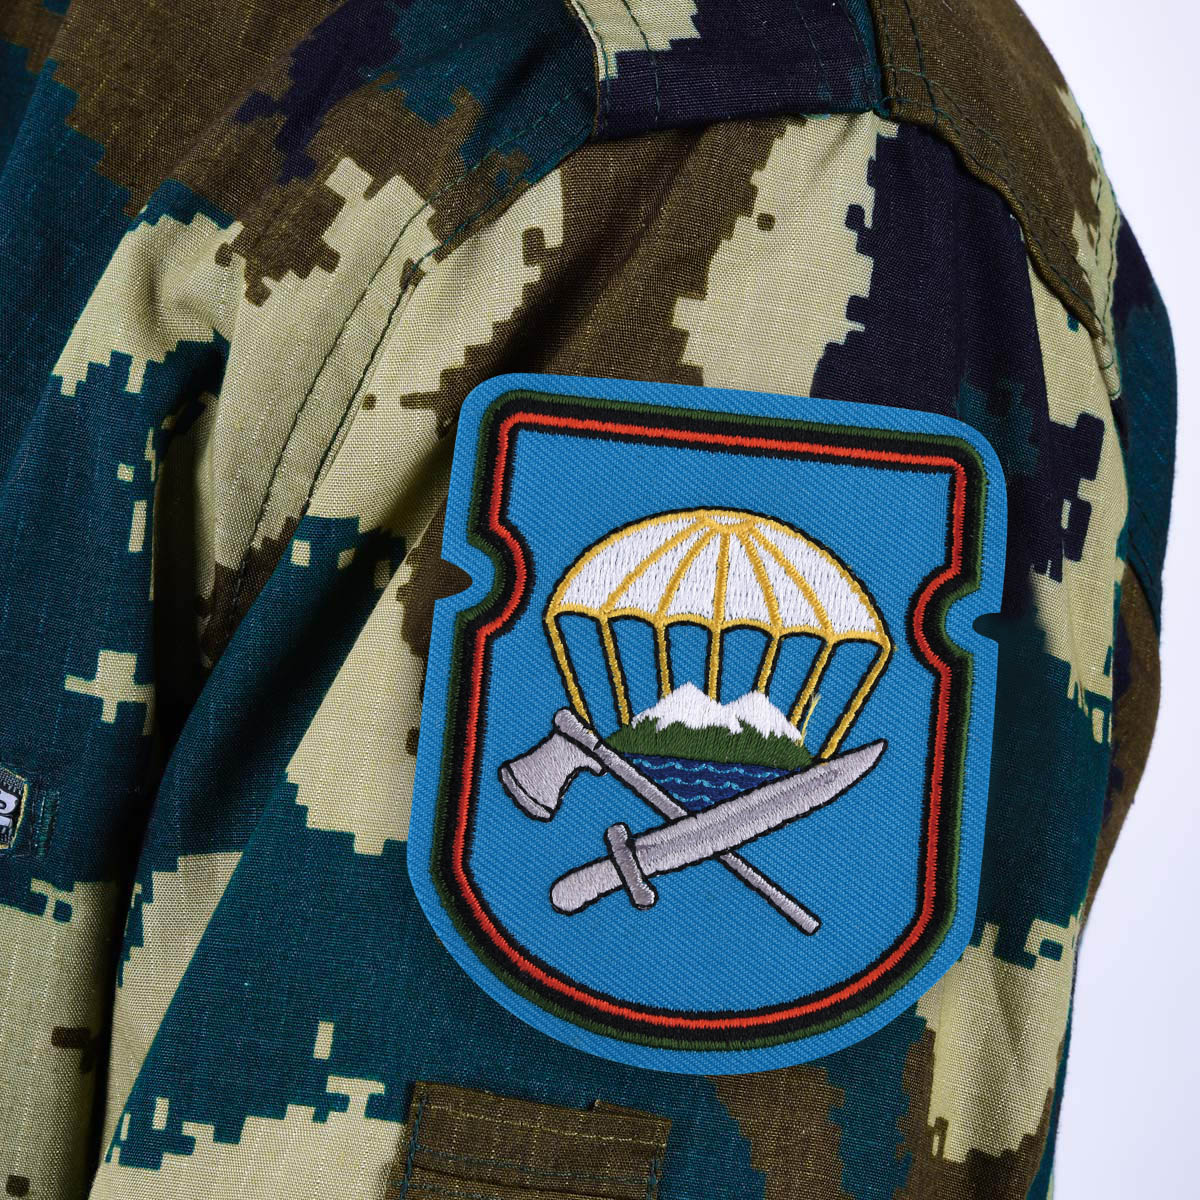 Нарукавный знак ВДВ "629-й отдельный инженерно-сапёрный батальон 7-ой ДШД" 